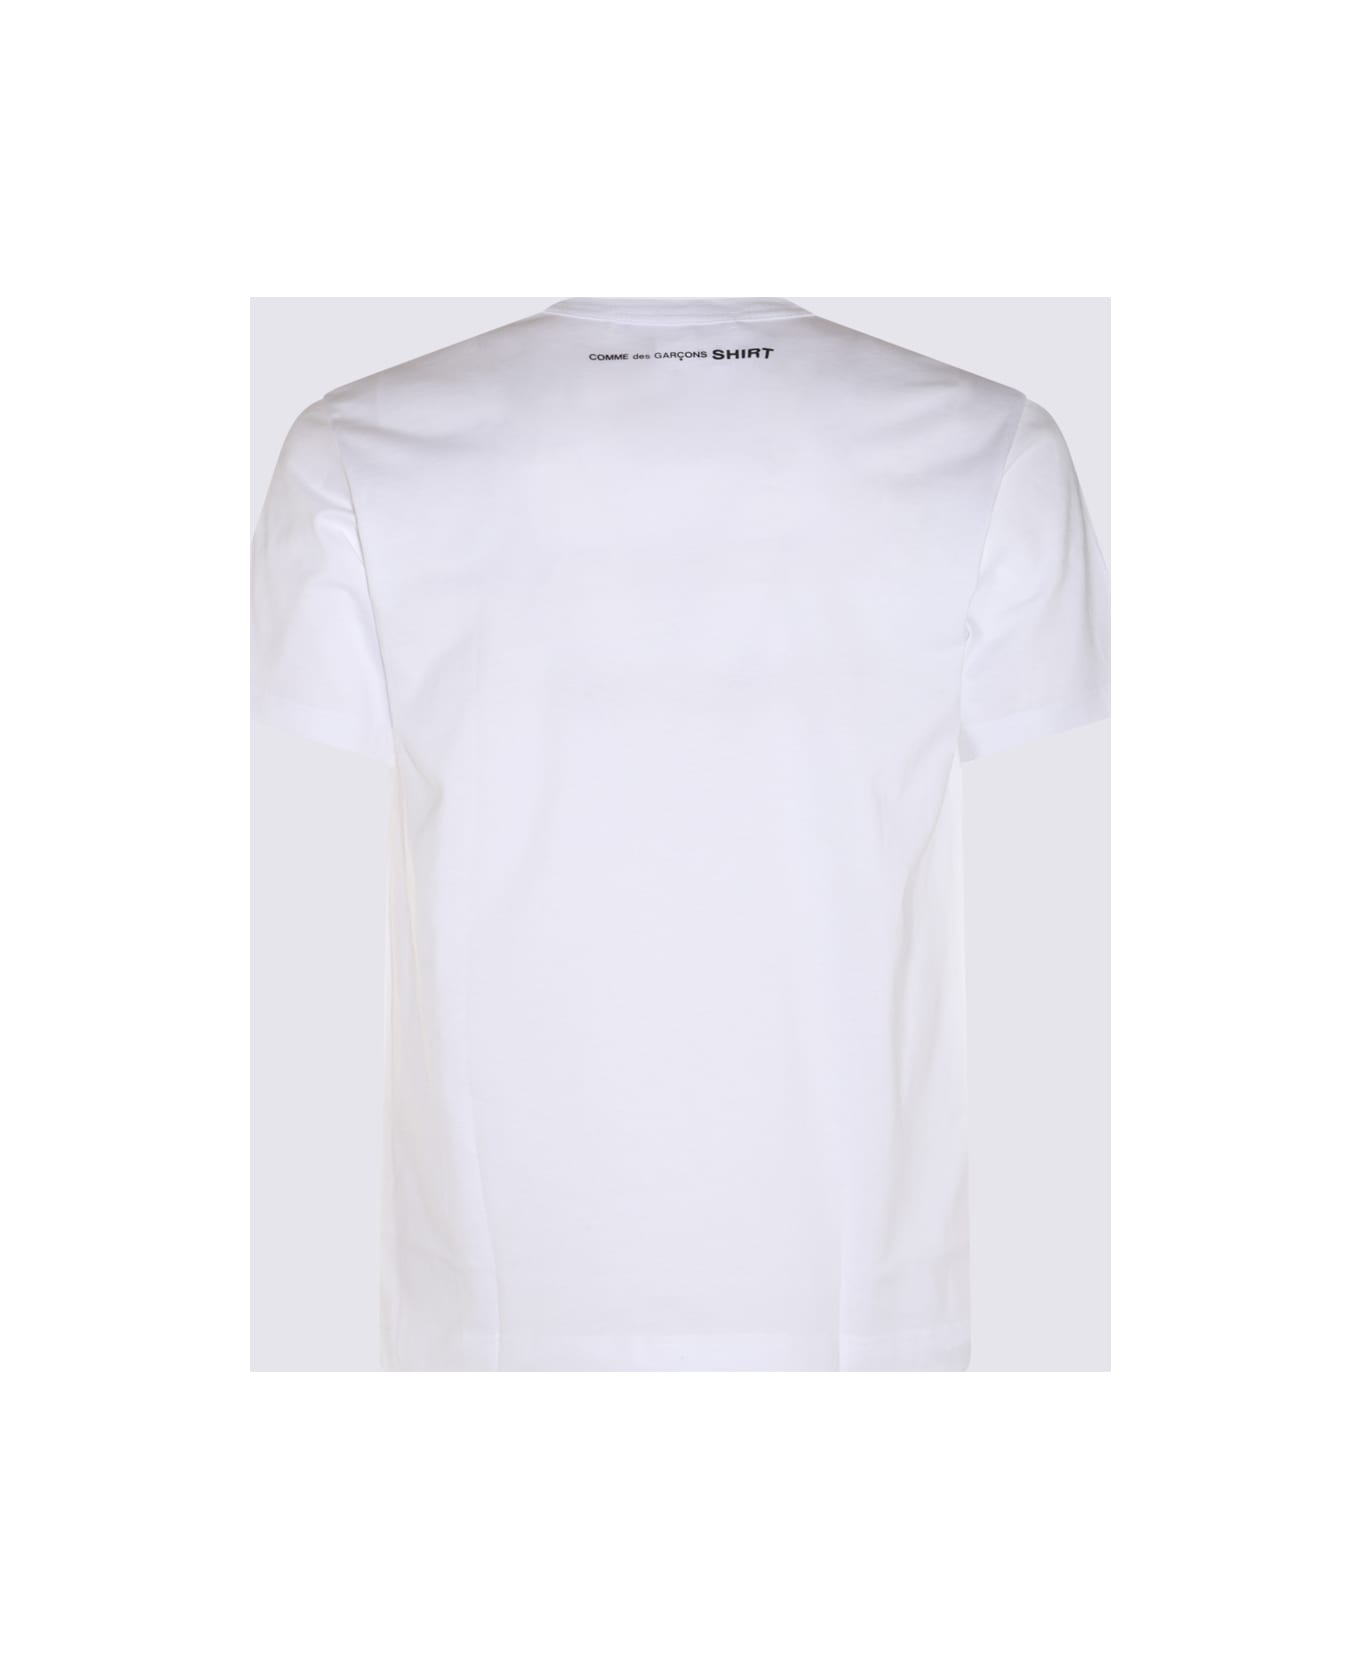 Comme des Garçons White Cotton T-shirt - White シャツ